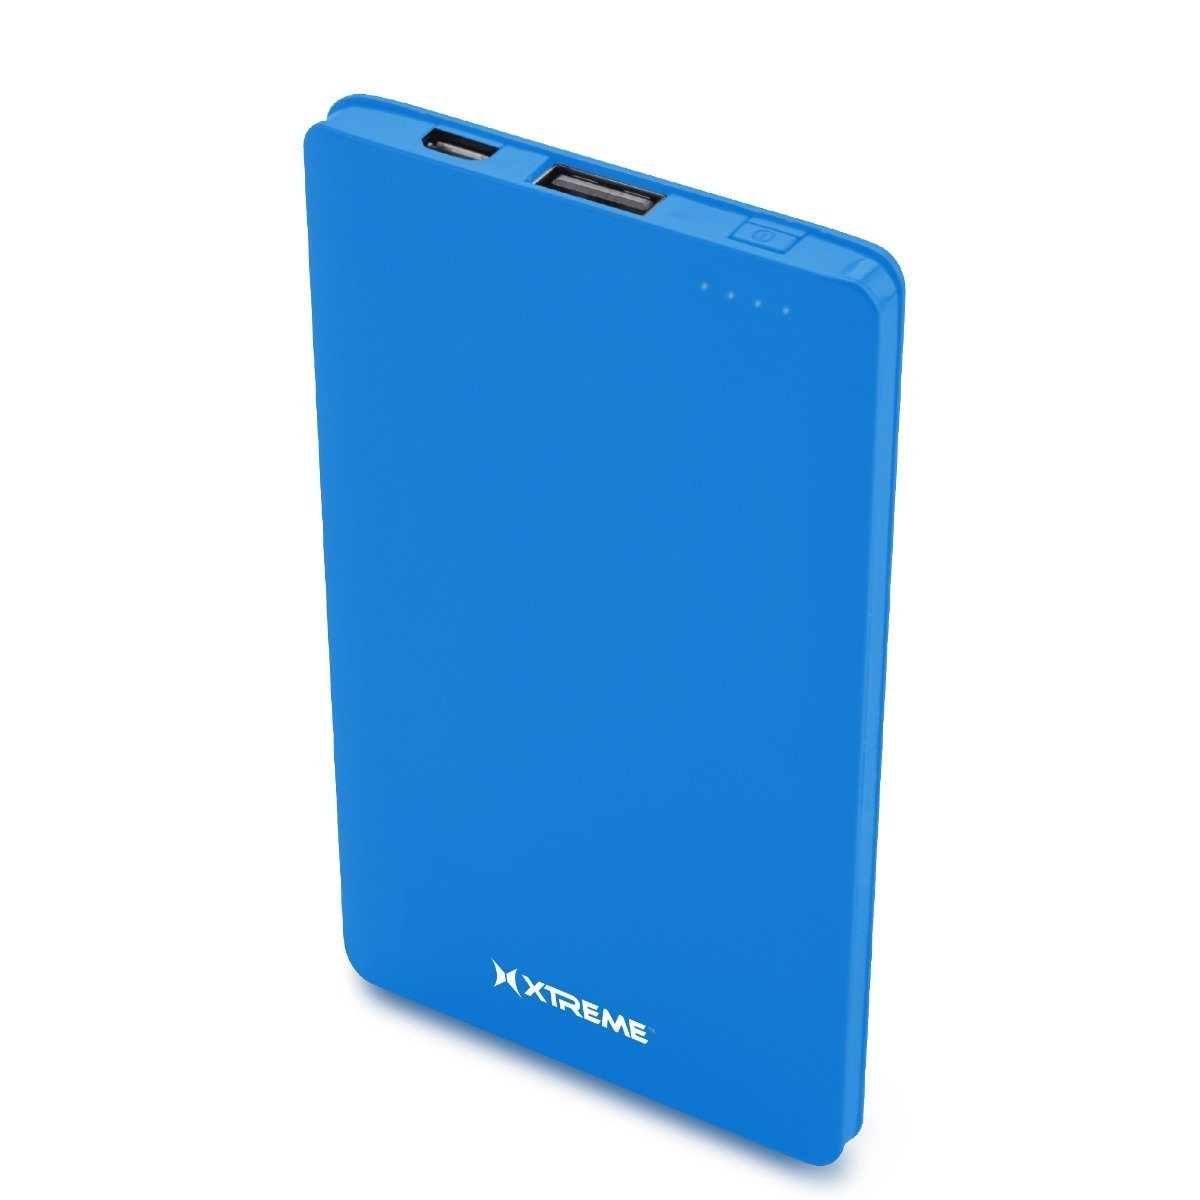 Xtreme XBB8-0151 3,000mAh Portable Power Bank / Blue